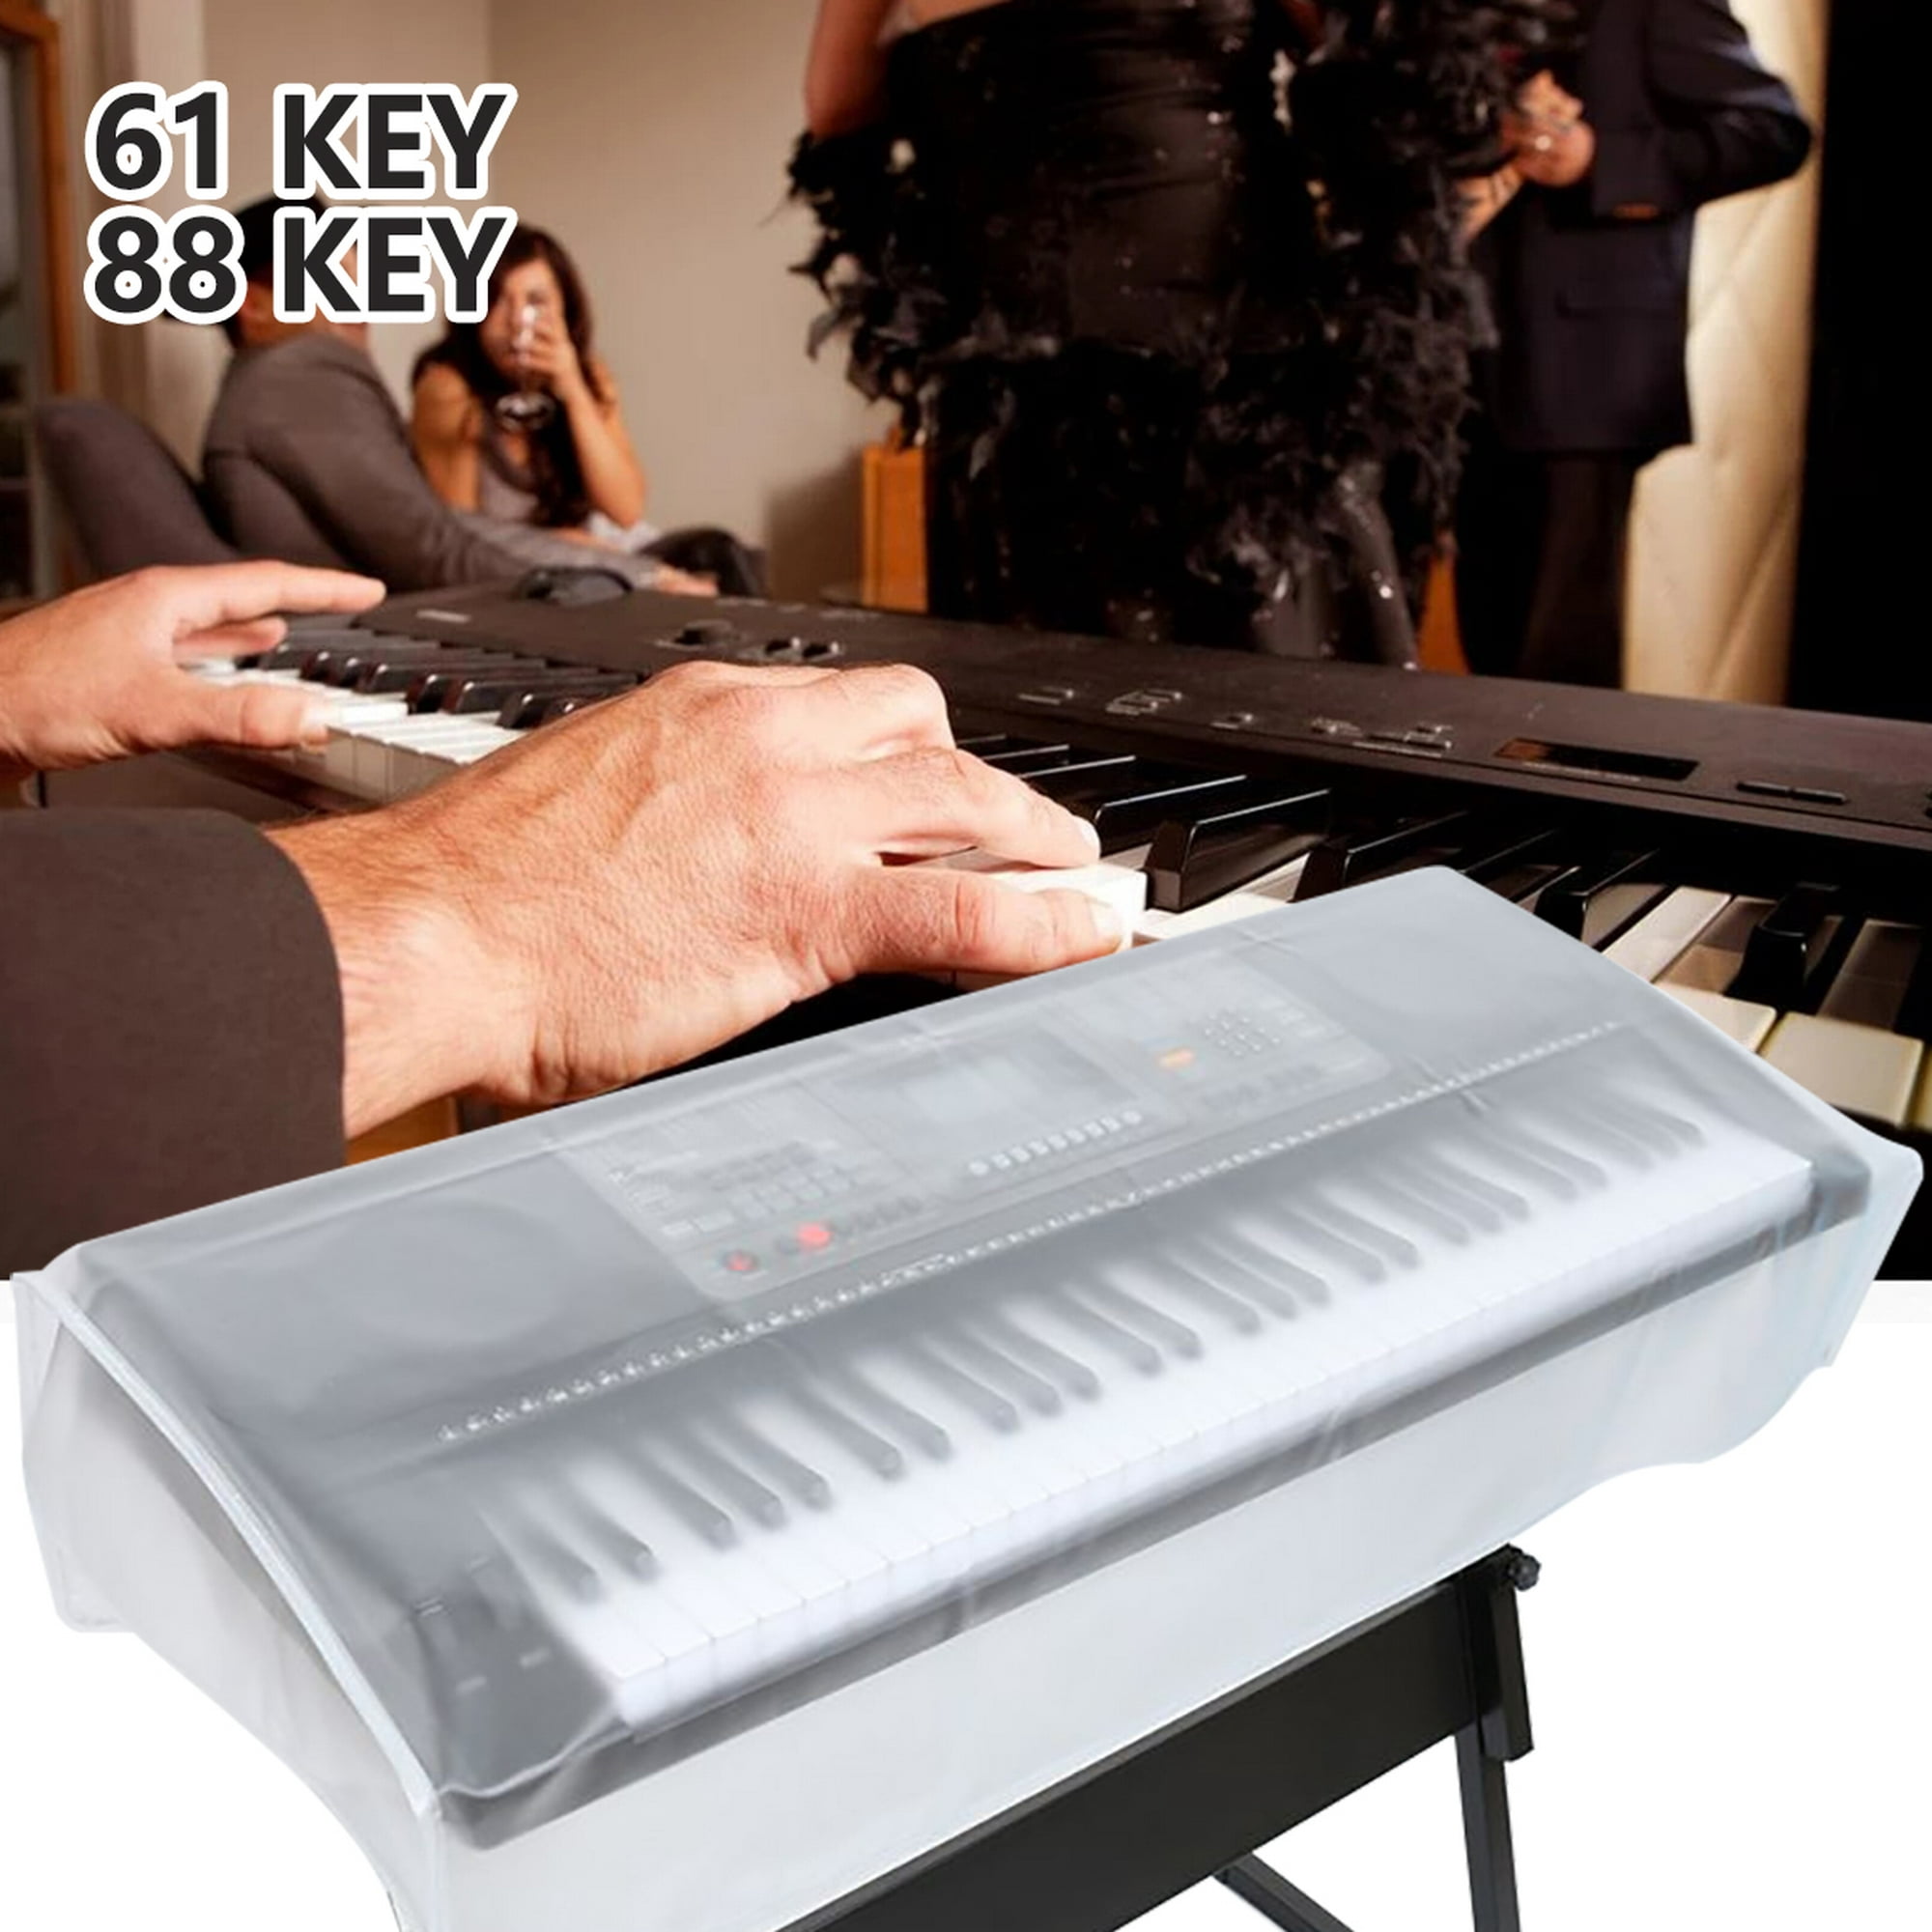 Para Piano Digital Para Profesionales kusrkot Soporte para teclado de piano